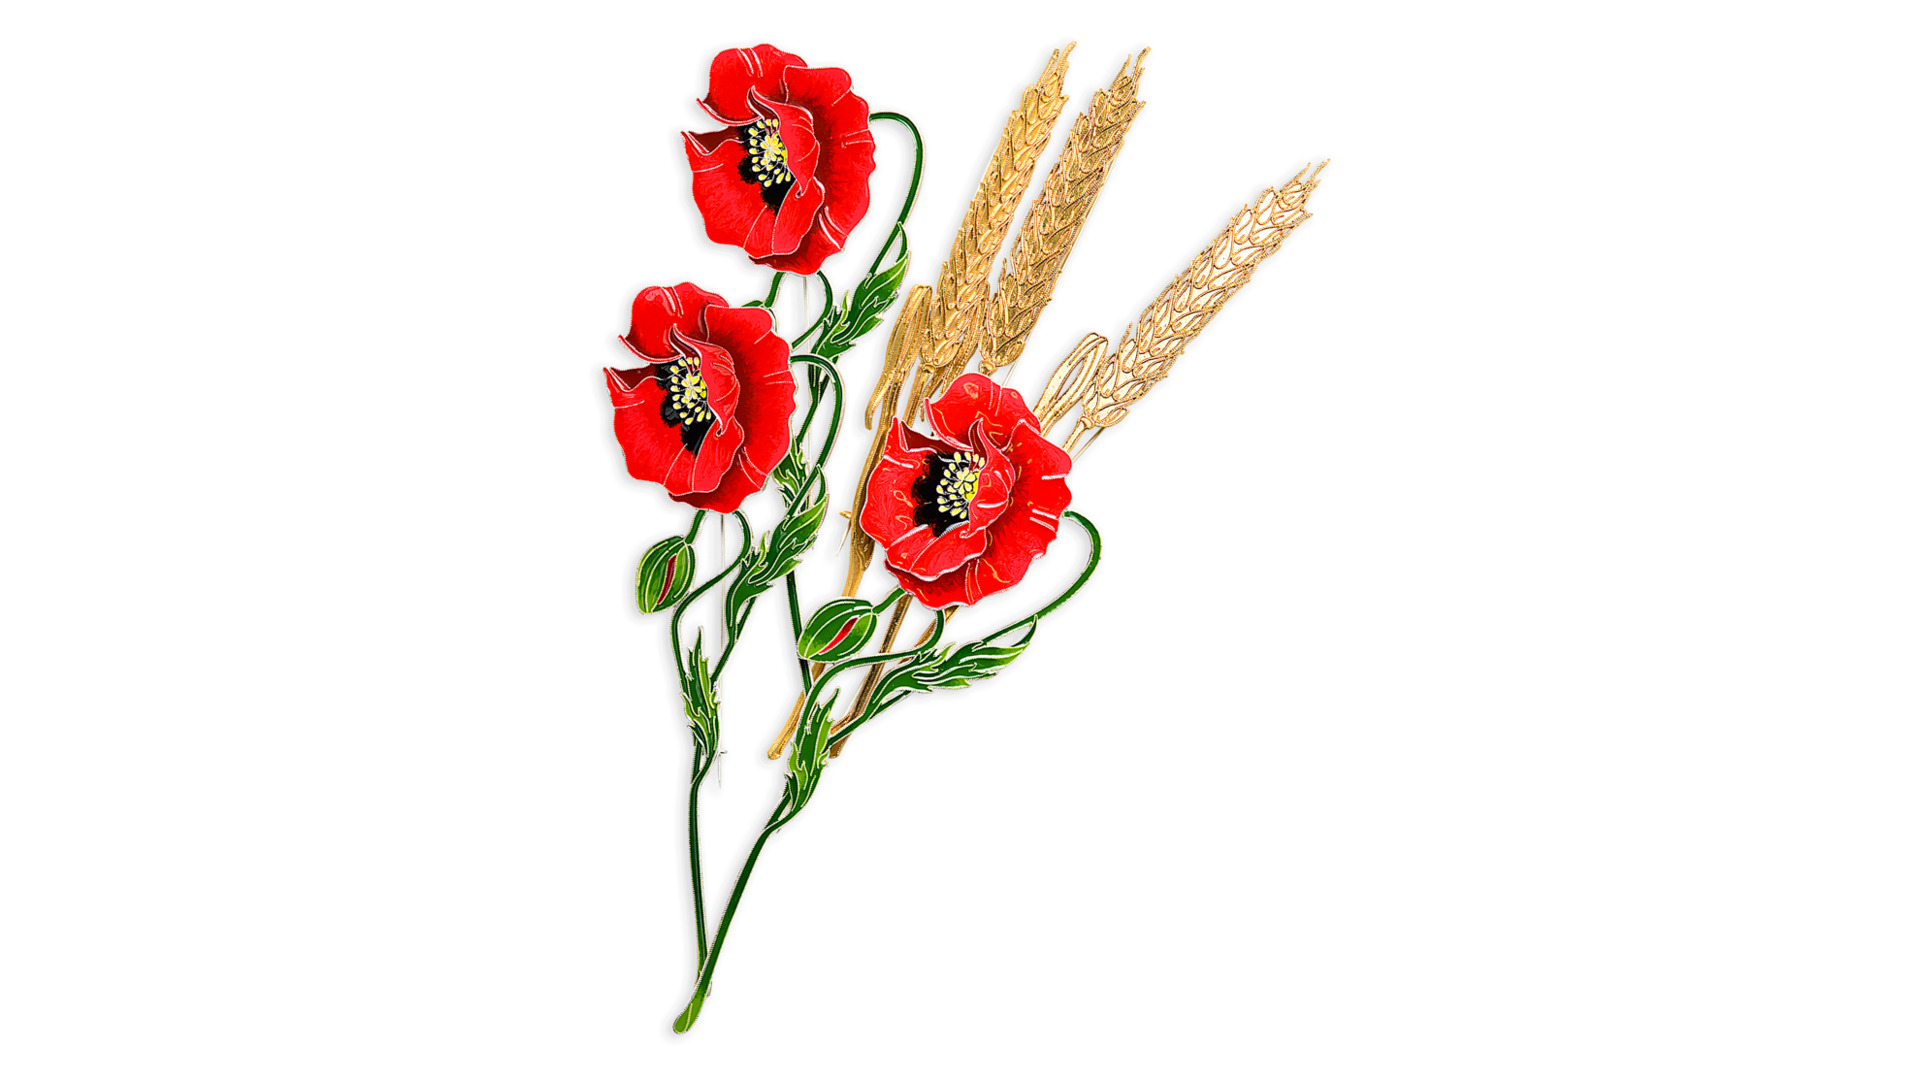 Брошь Русские самоцветы Пшеница 15,87 г, серебро 925